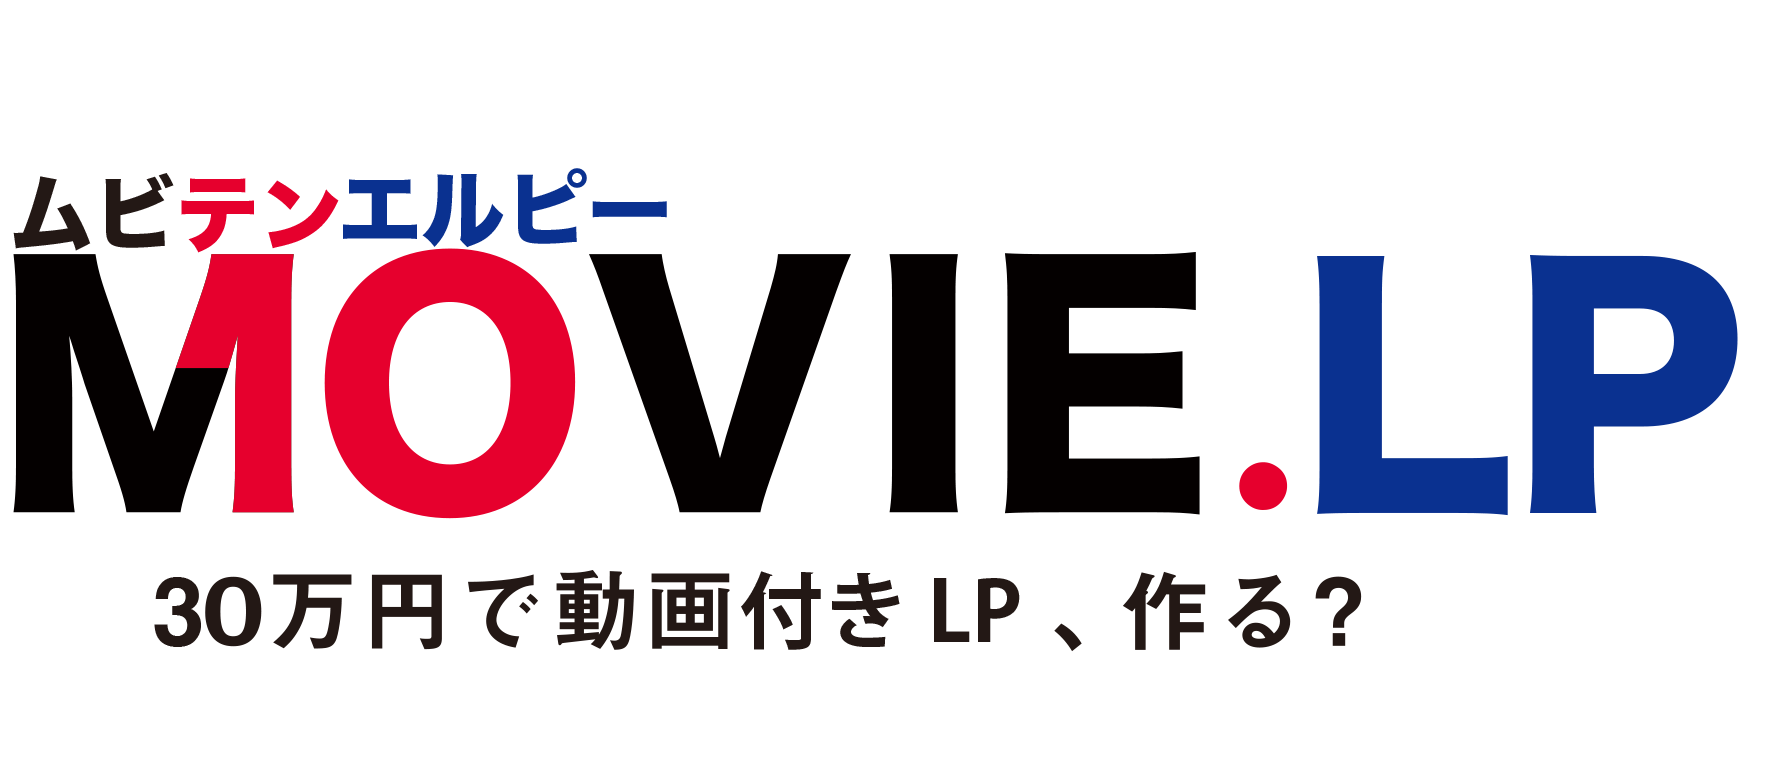 MOVIE.LP(ムビテン・エルピー) | 30万円で動画付きLP、作る？